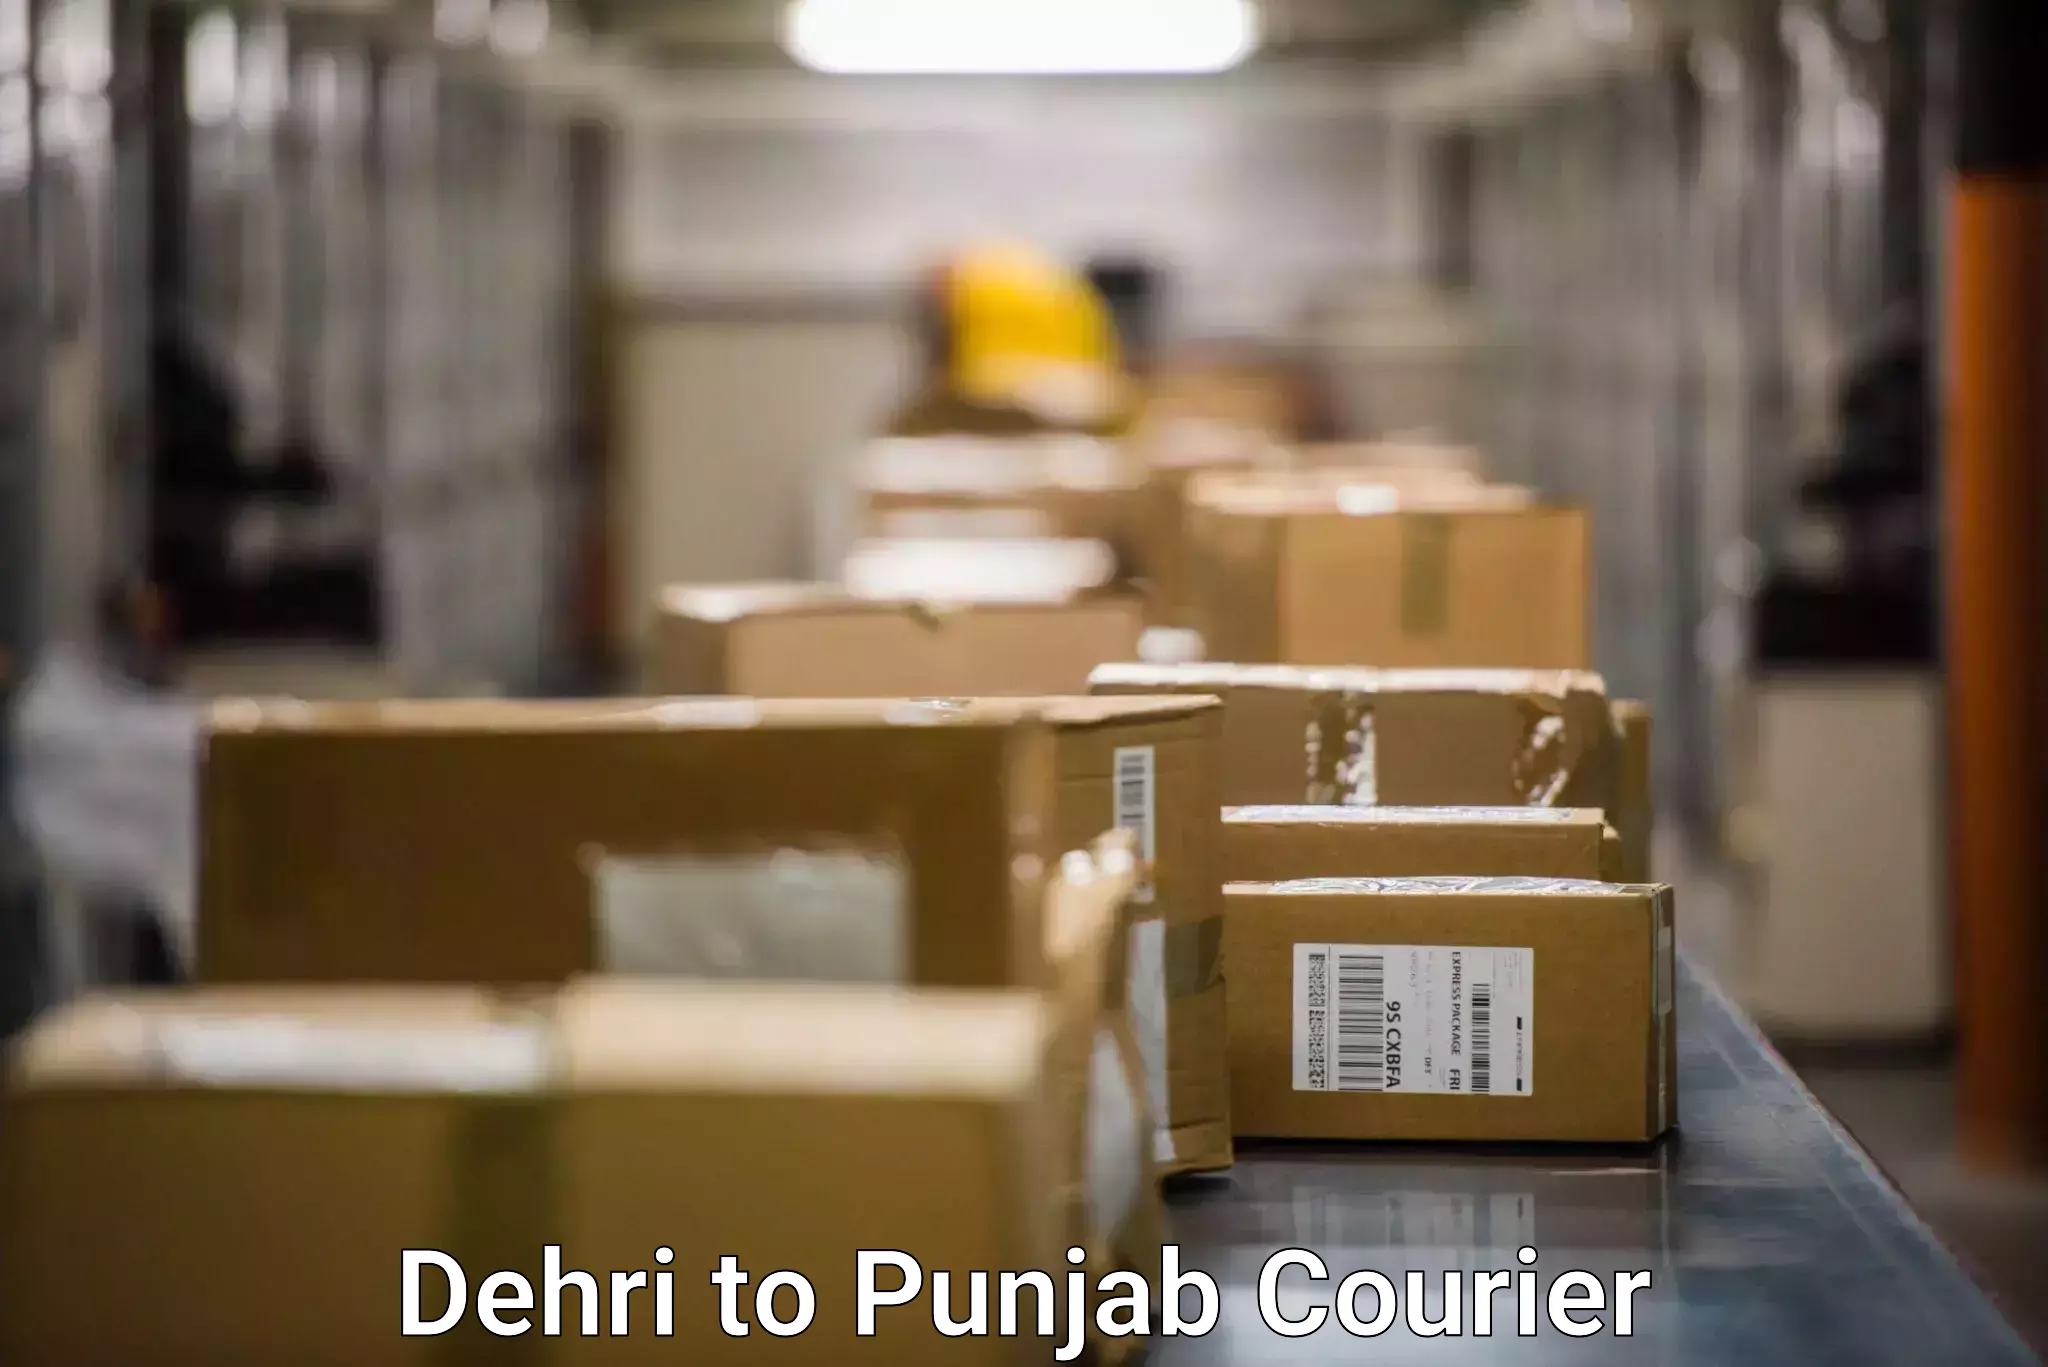 Courier service comparison Dehri to Rupnagar